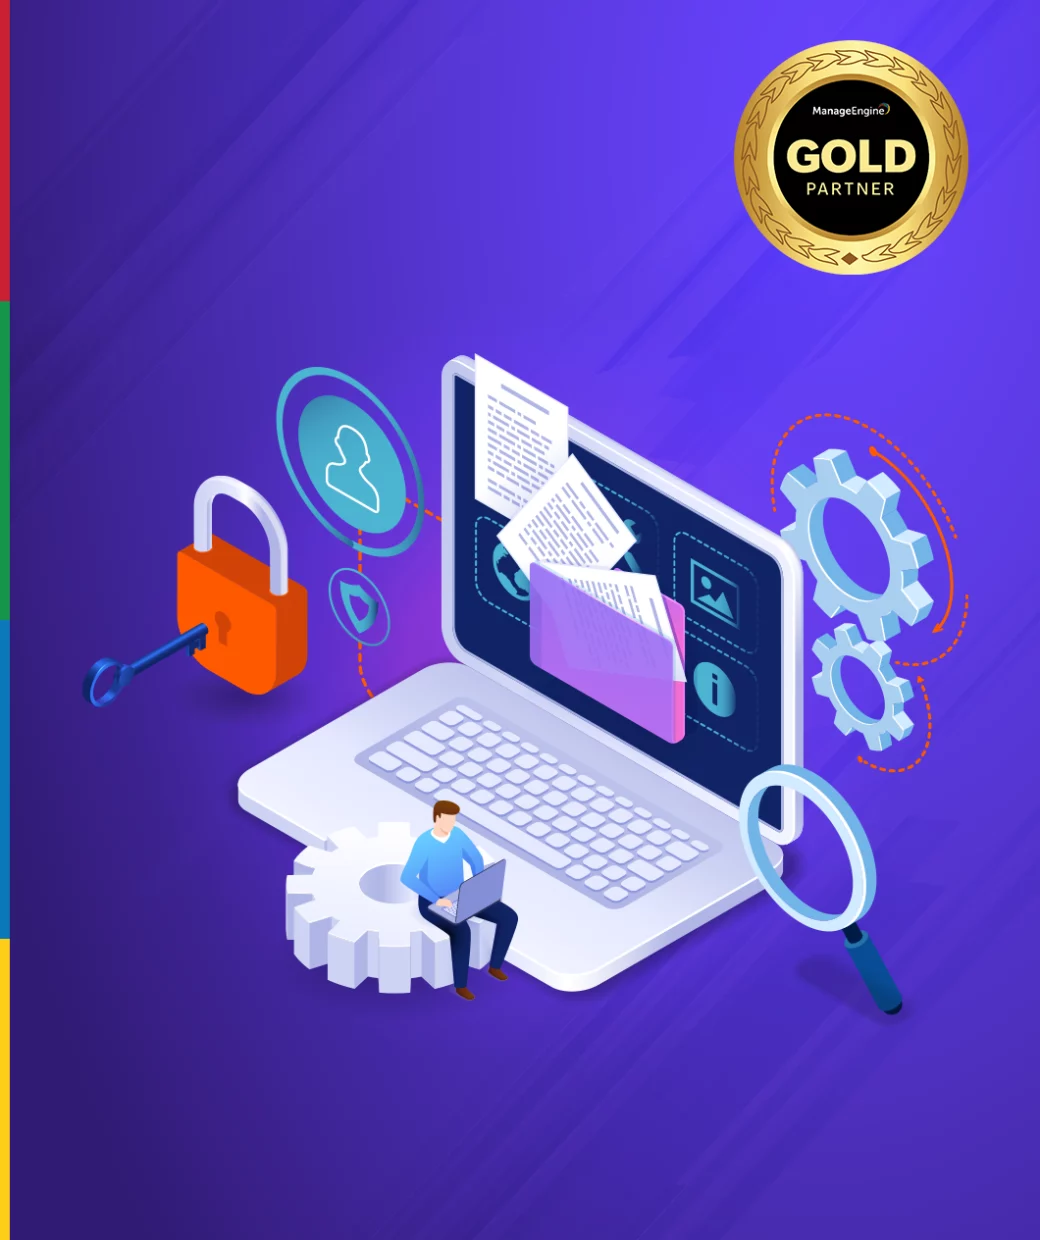 Ilustración de sistemas de seguridad ti enfocados en al prevención de ataques y brechas con el apoyo de Vulnerability Manager y del cual icorp es el partner gold de ManageEngine en México.